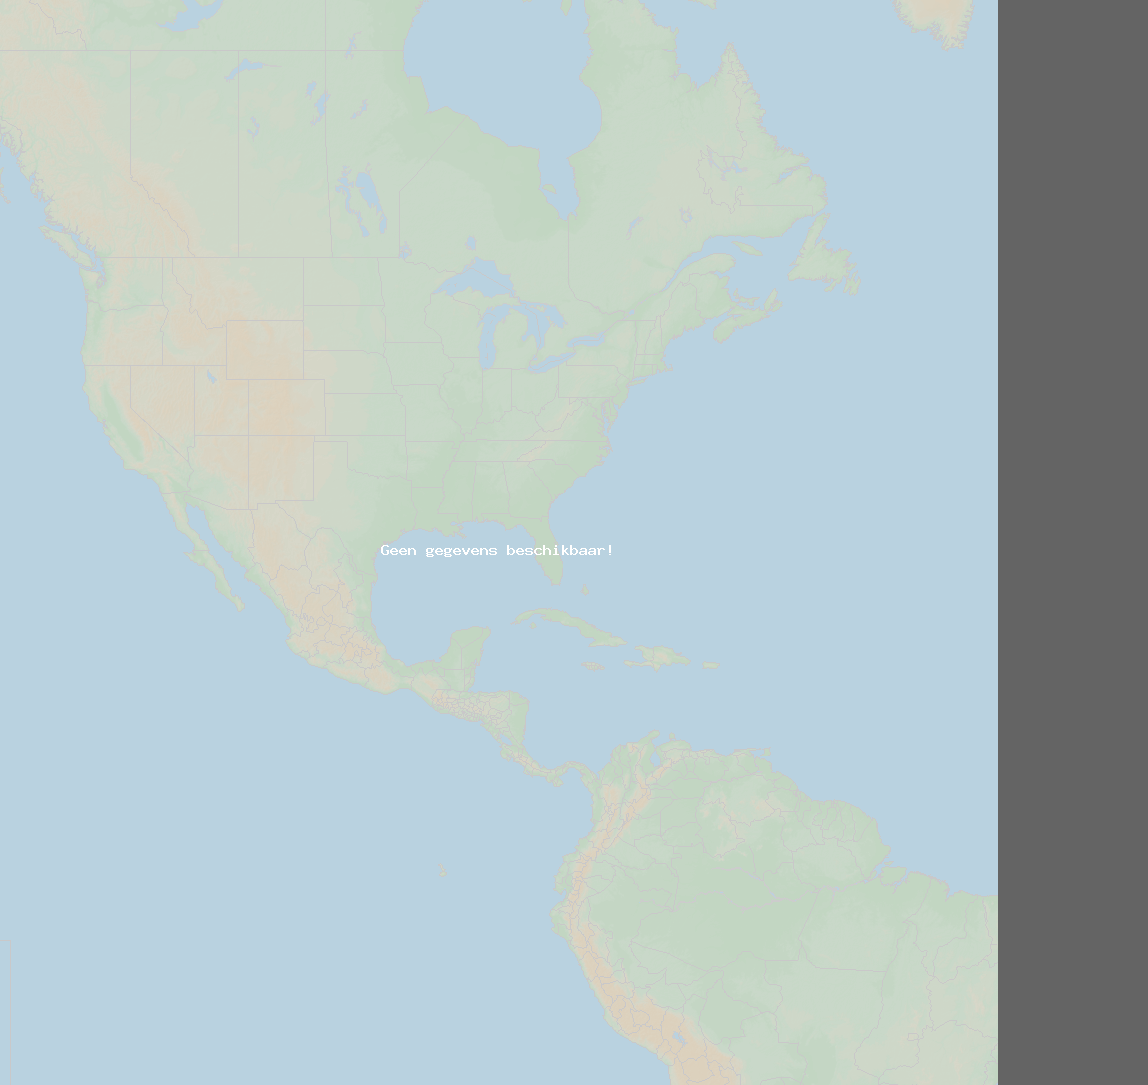 Inslagverhouding (Station Kingsport (Blue)) North America 2021 oktober